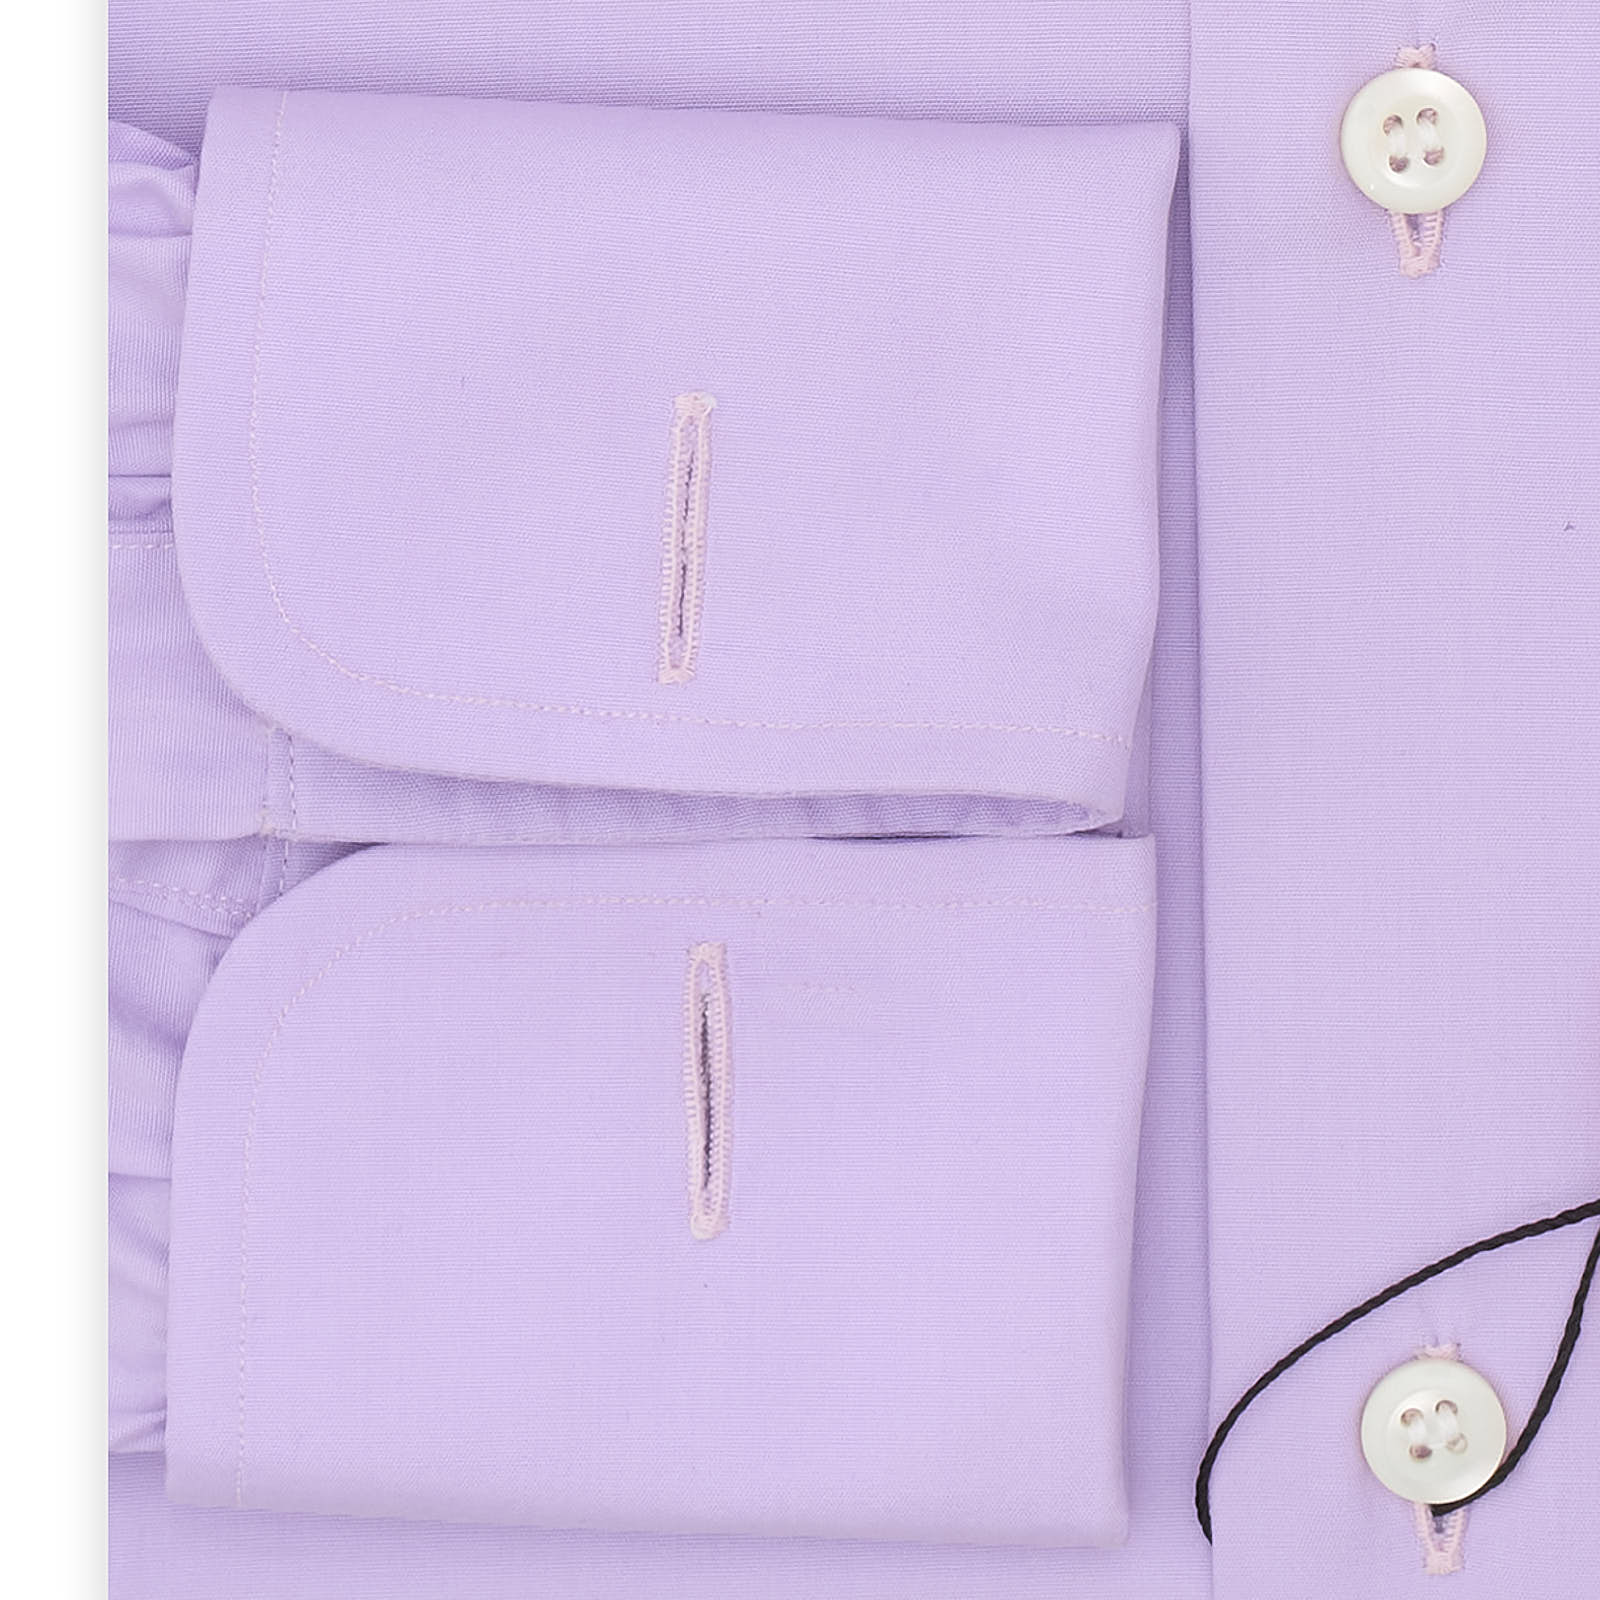 BESPOKE ATHENS Handmade Light Purple Cotton French Cuff Dress Shirt EU 38 NEW US 15